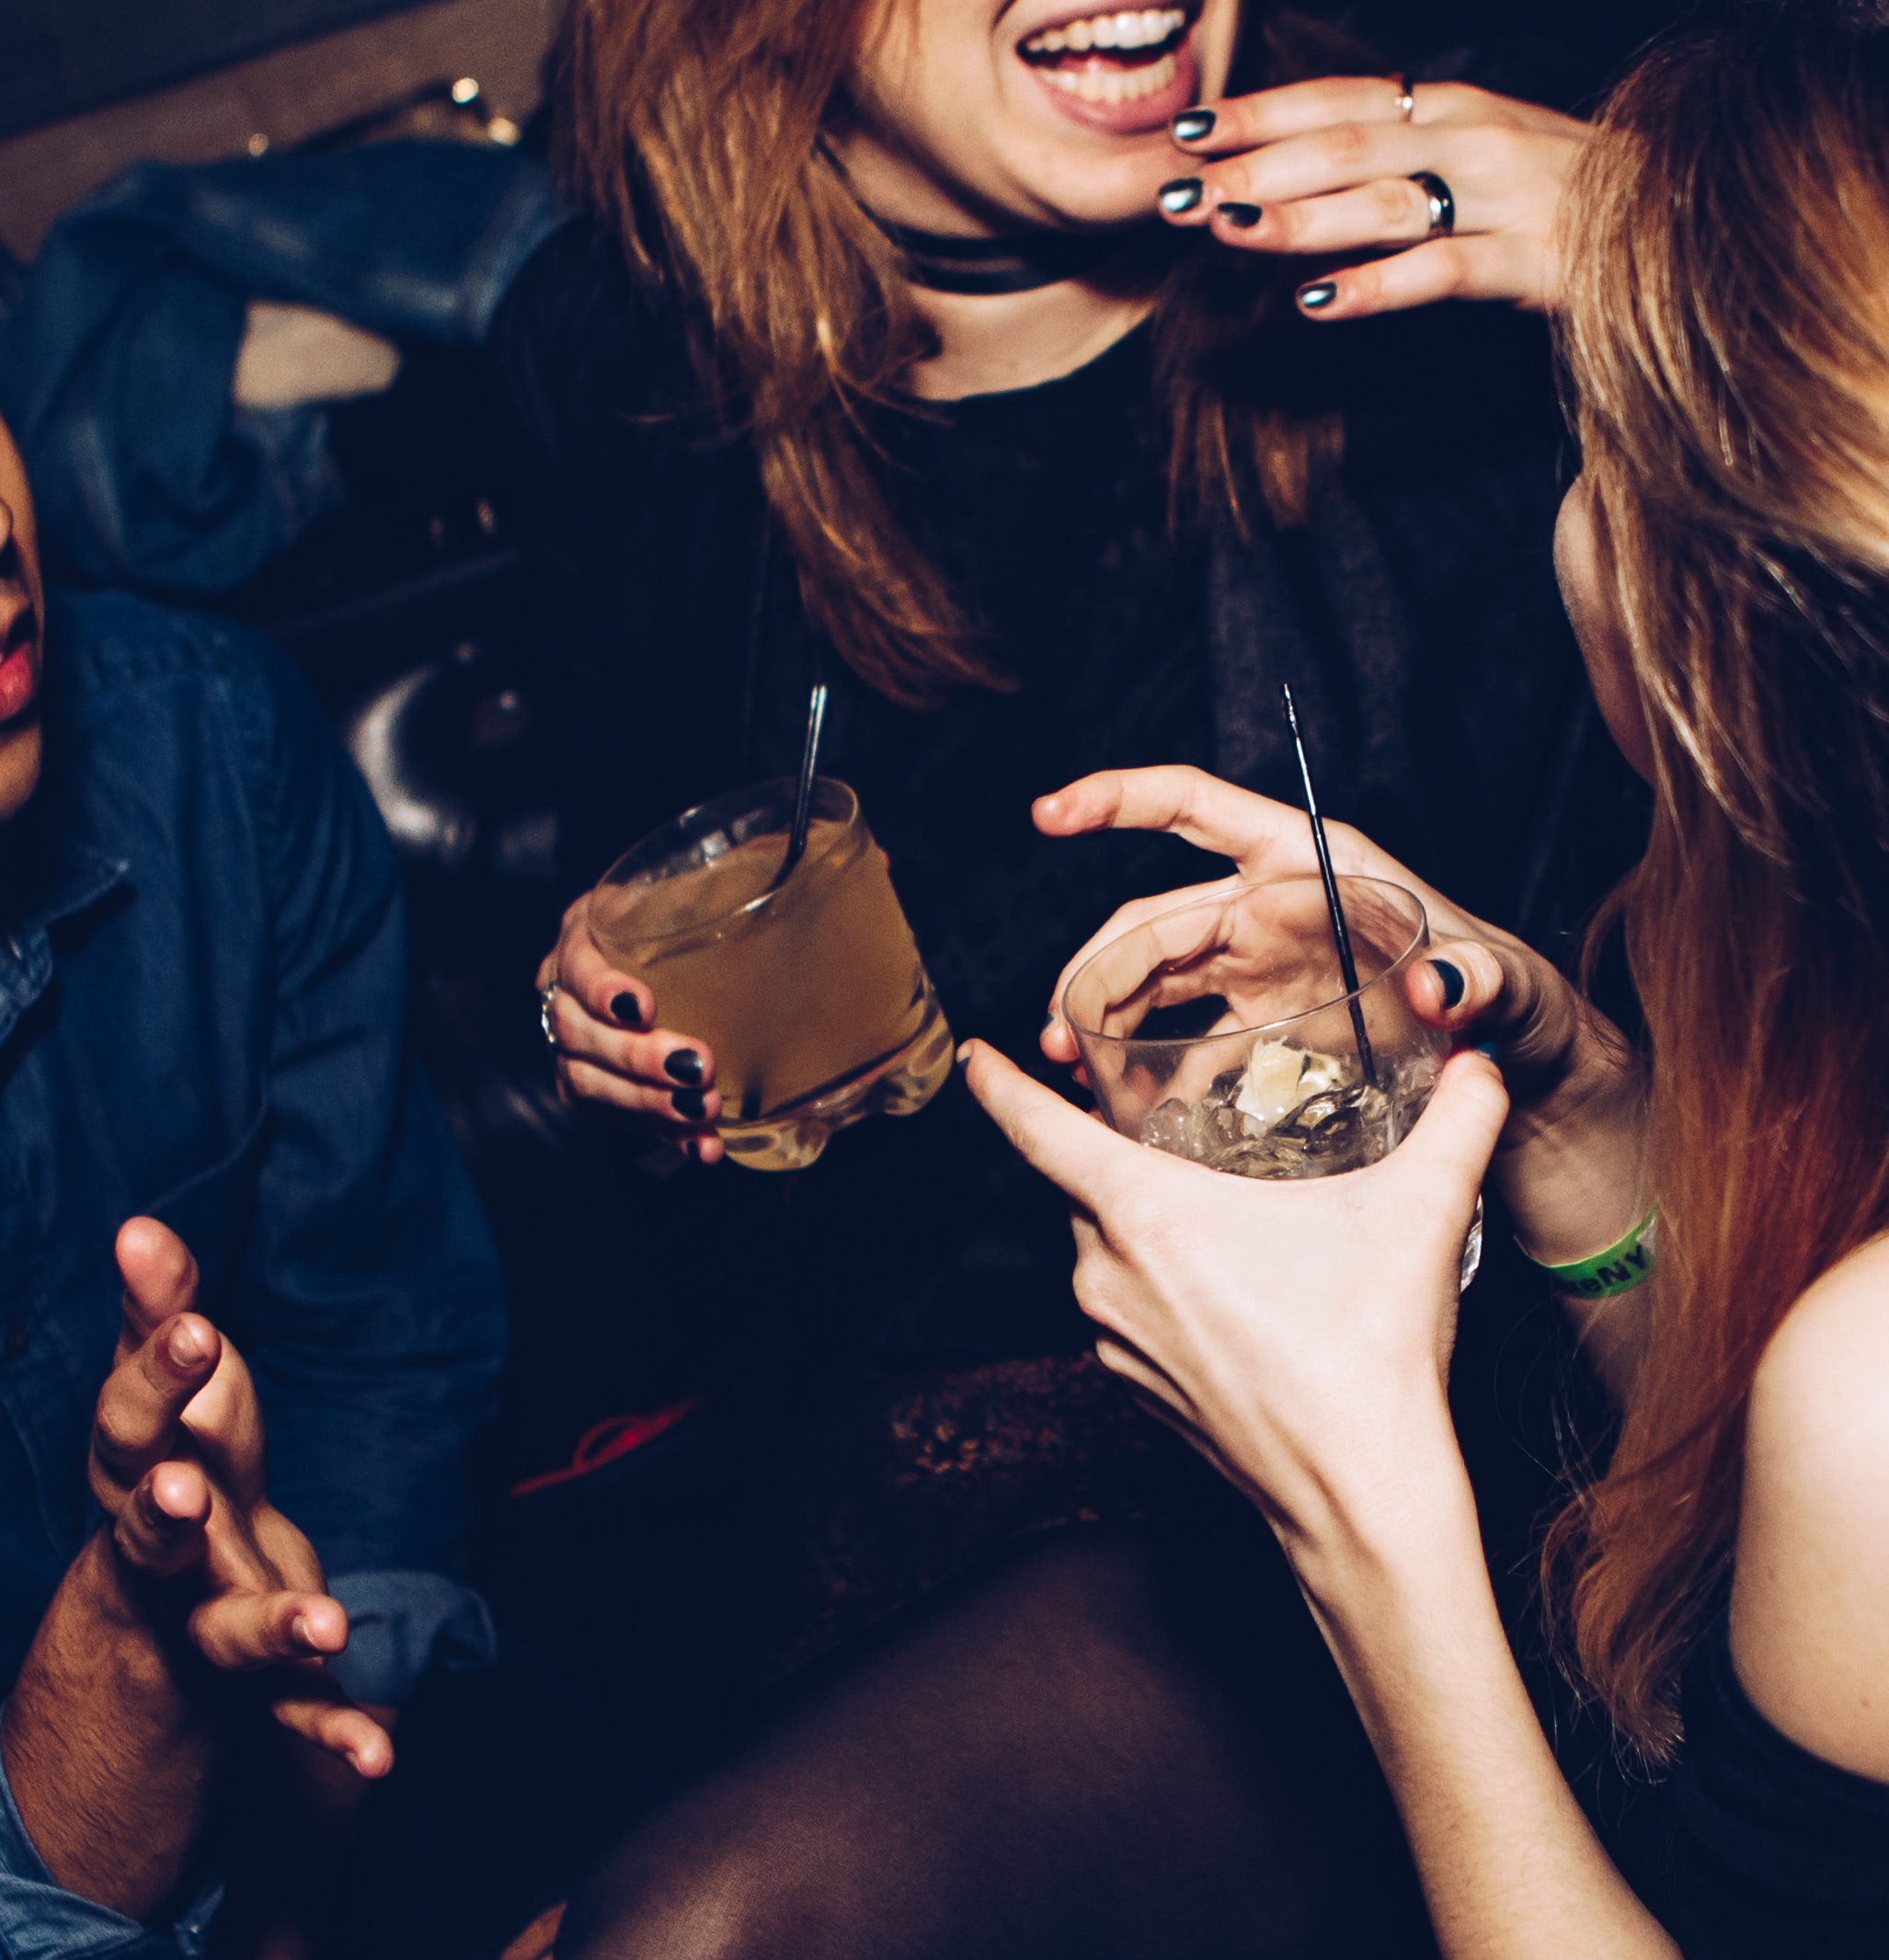 women drinking cocktails